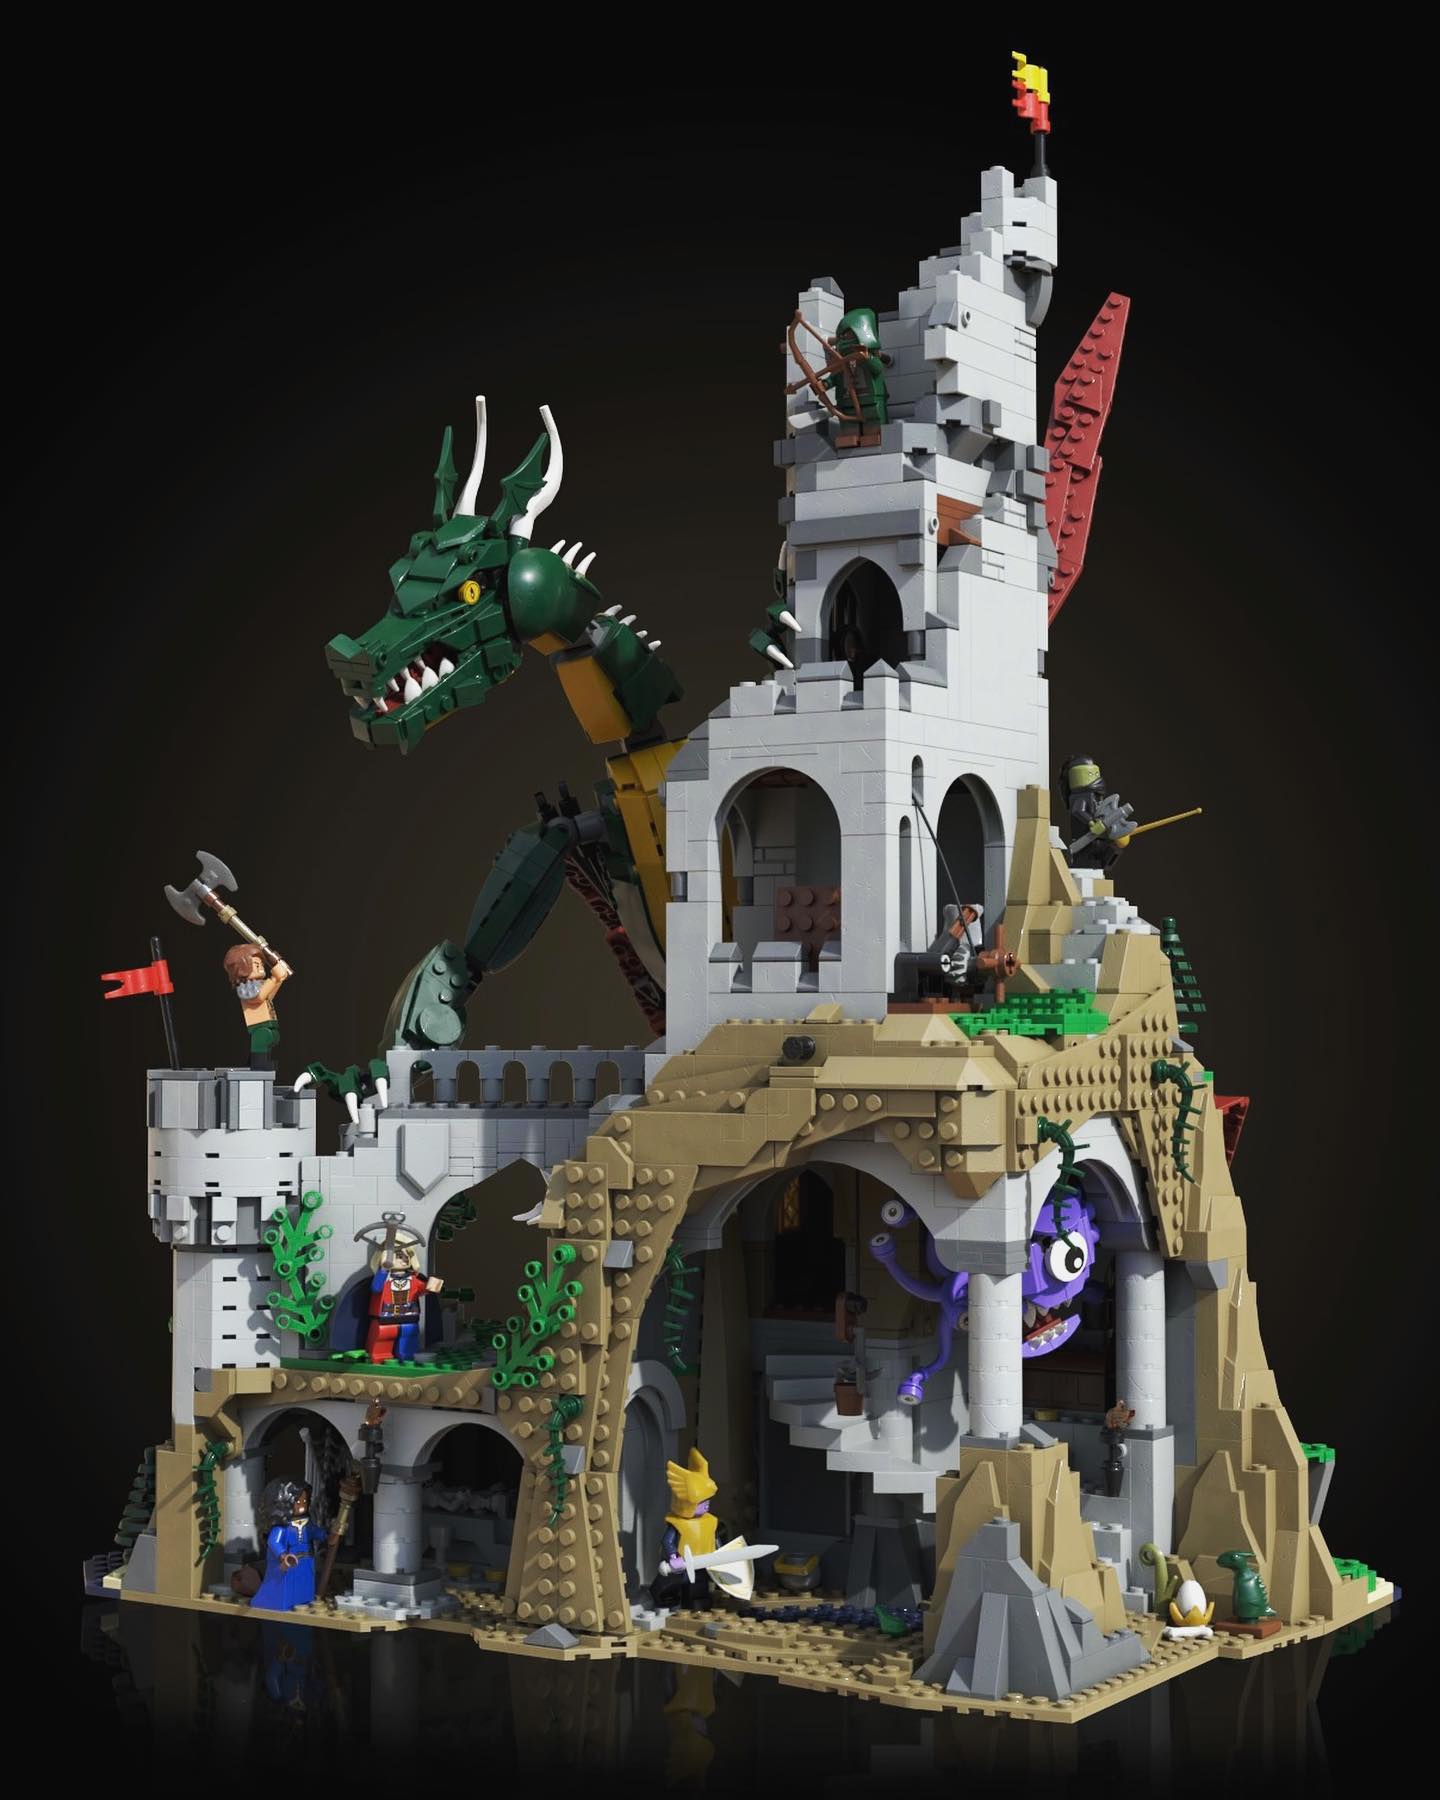 Set Lego Seigneur des Anneaux Fondcombe 10316